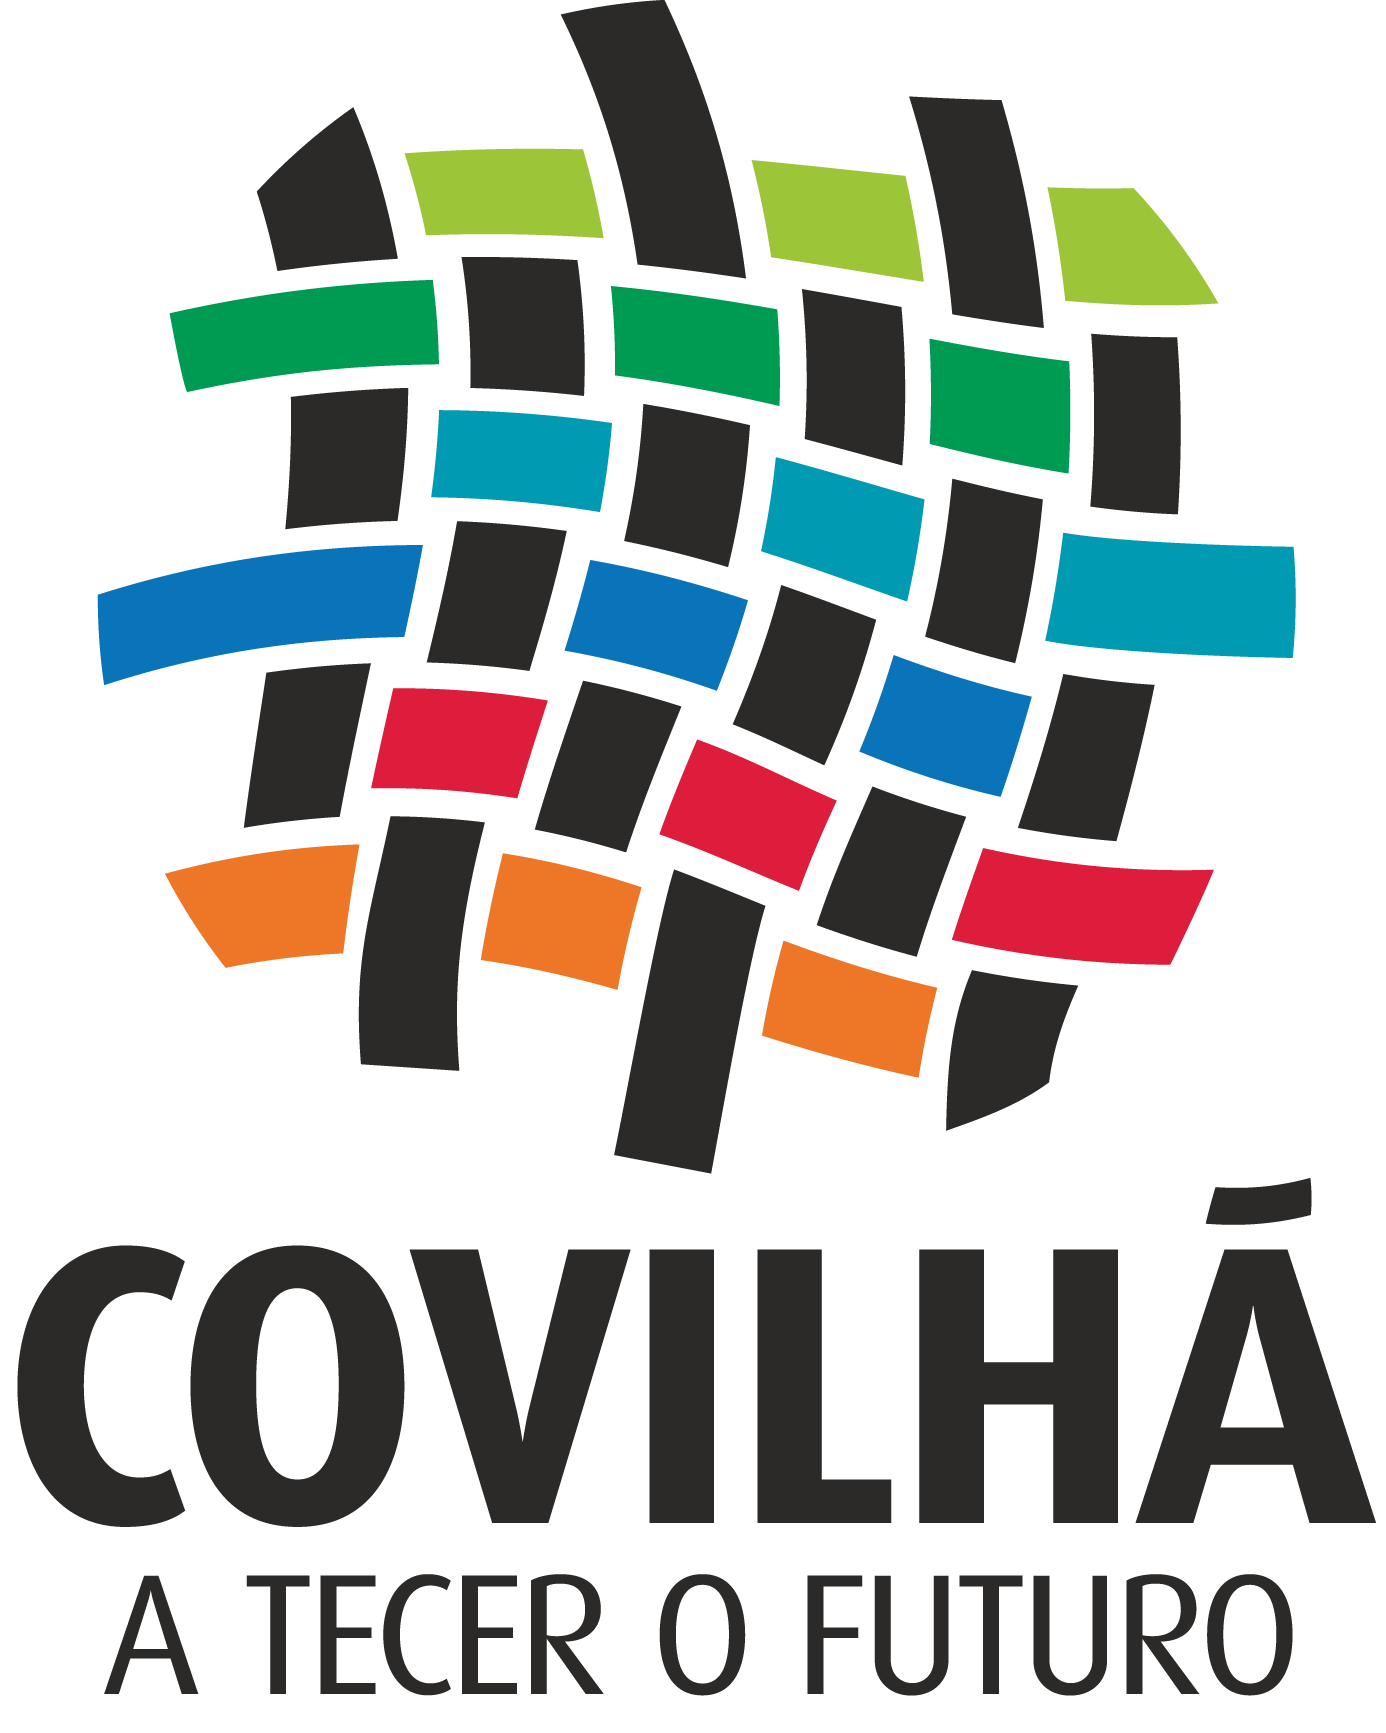 Municipio da Covilha